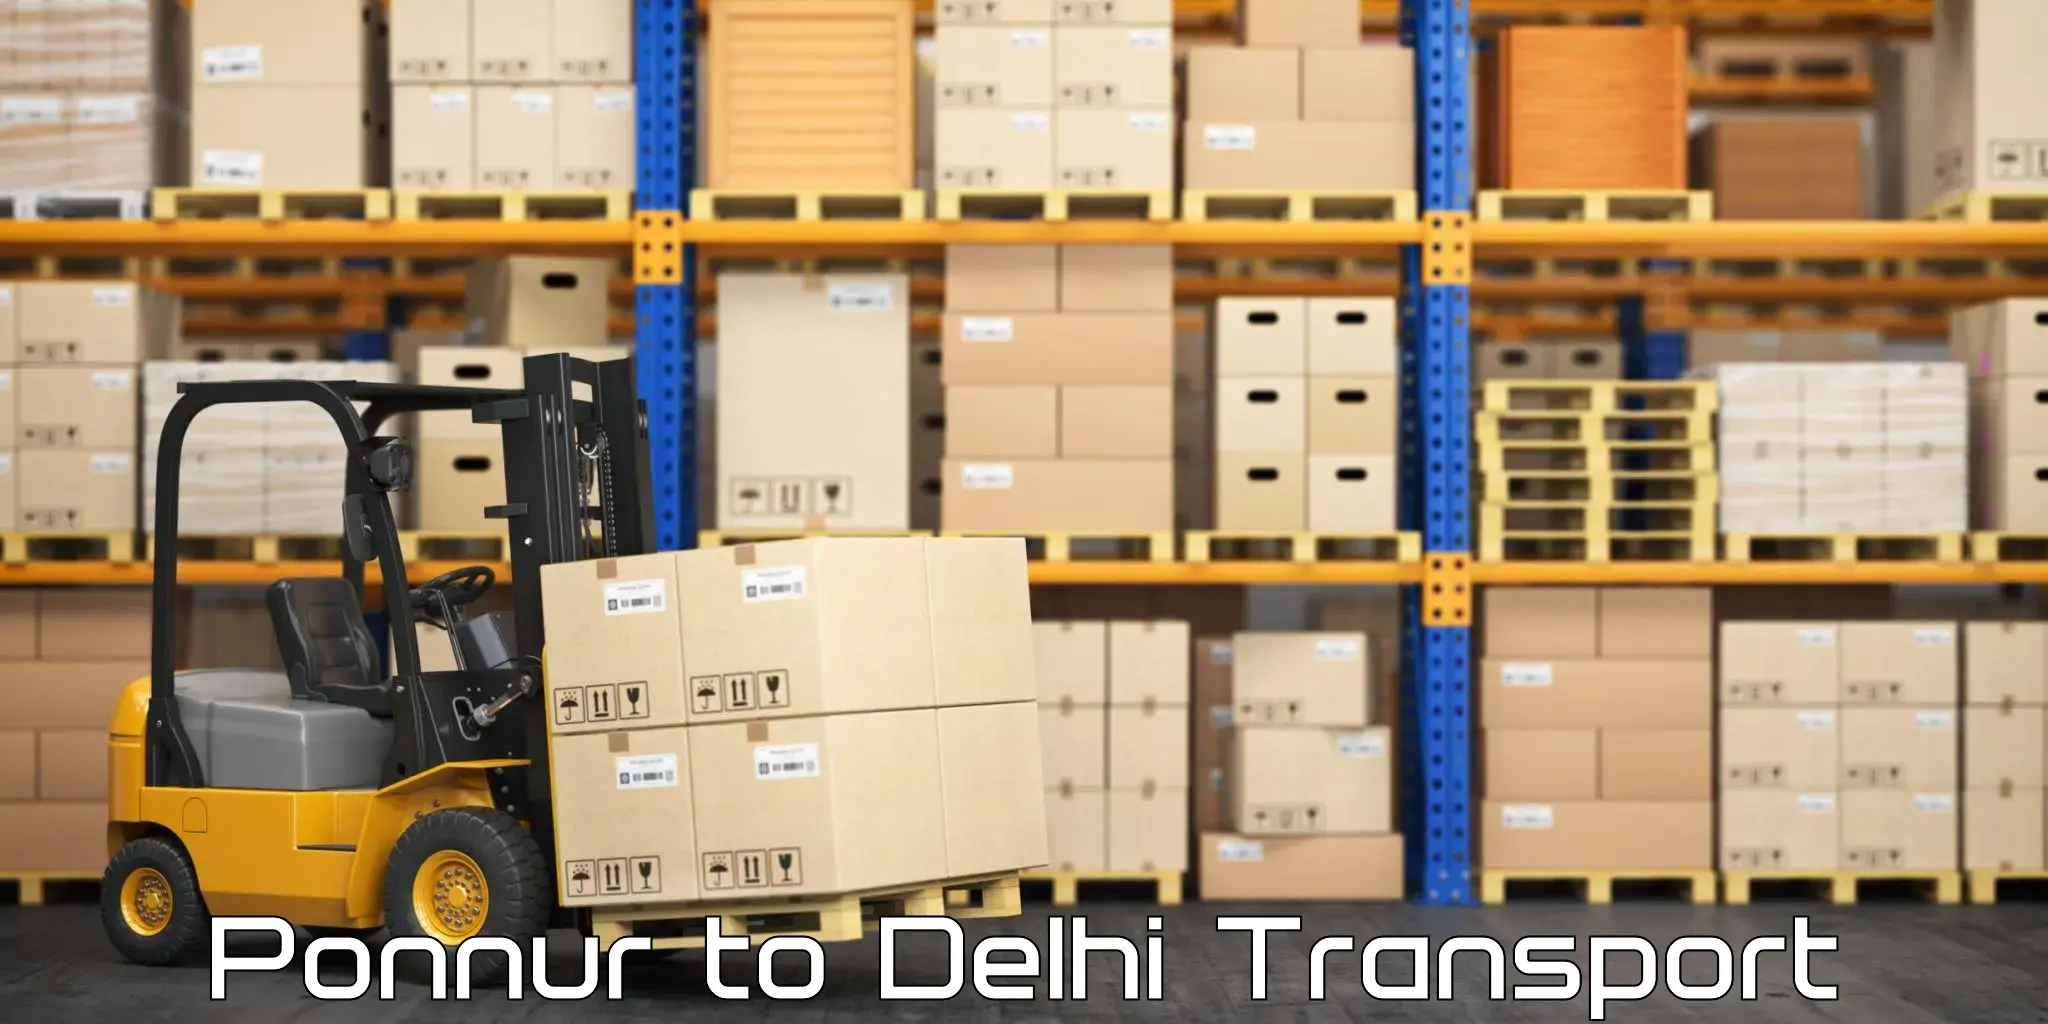 Online transport service Ponnur to Delhi